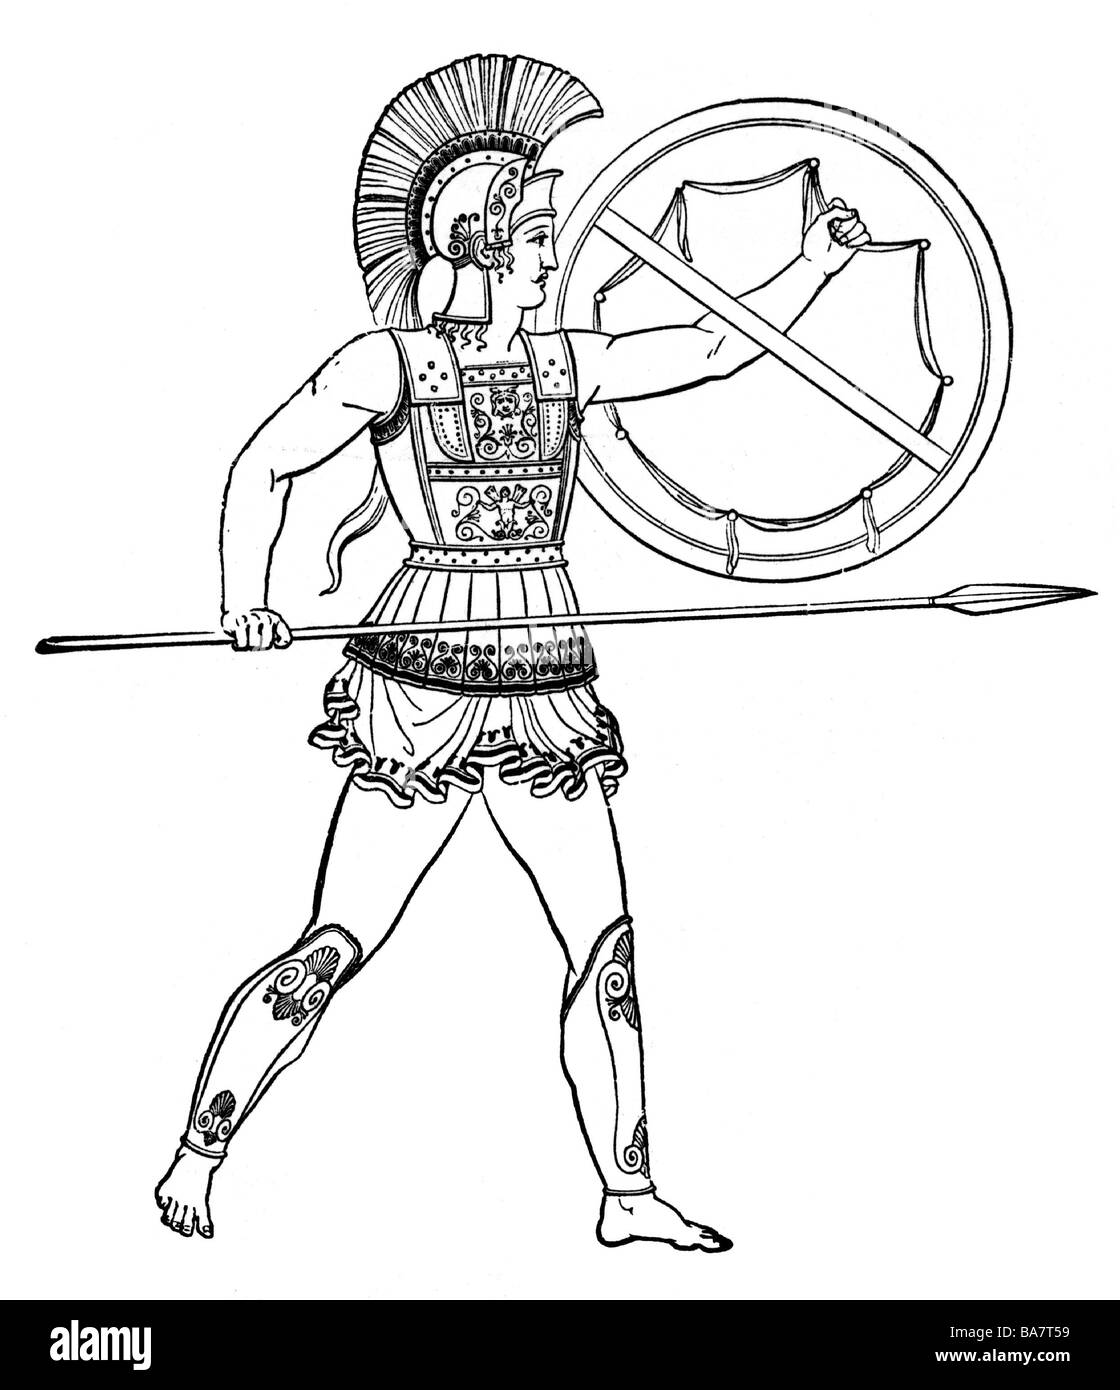 Militare, antico mondo, Grecia, guerriero fortemente armato (hoplite), da un antico vaso, circa 4th secolo a.C., incisione in legno, 19th secolo, , Foto Stock